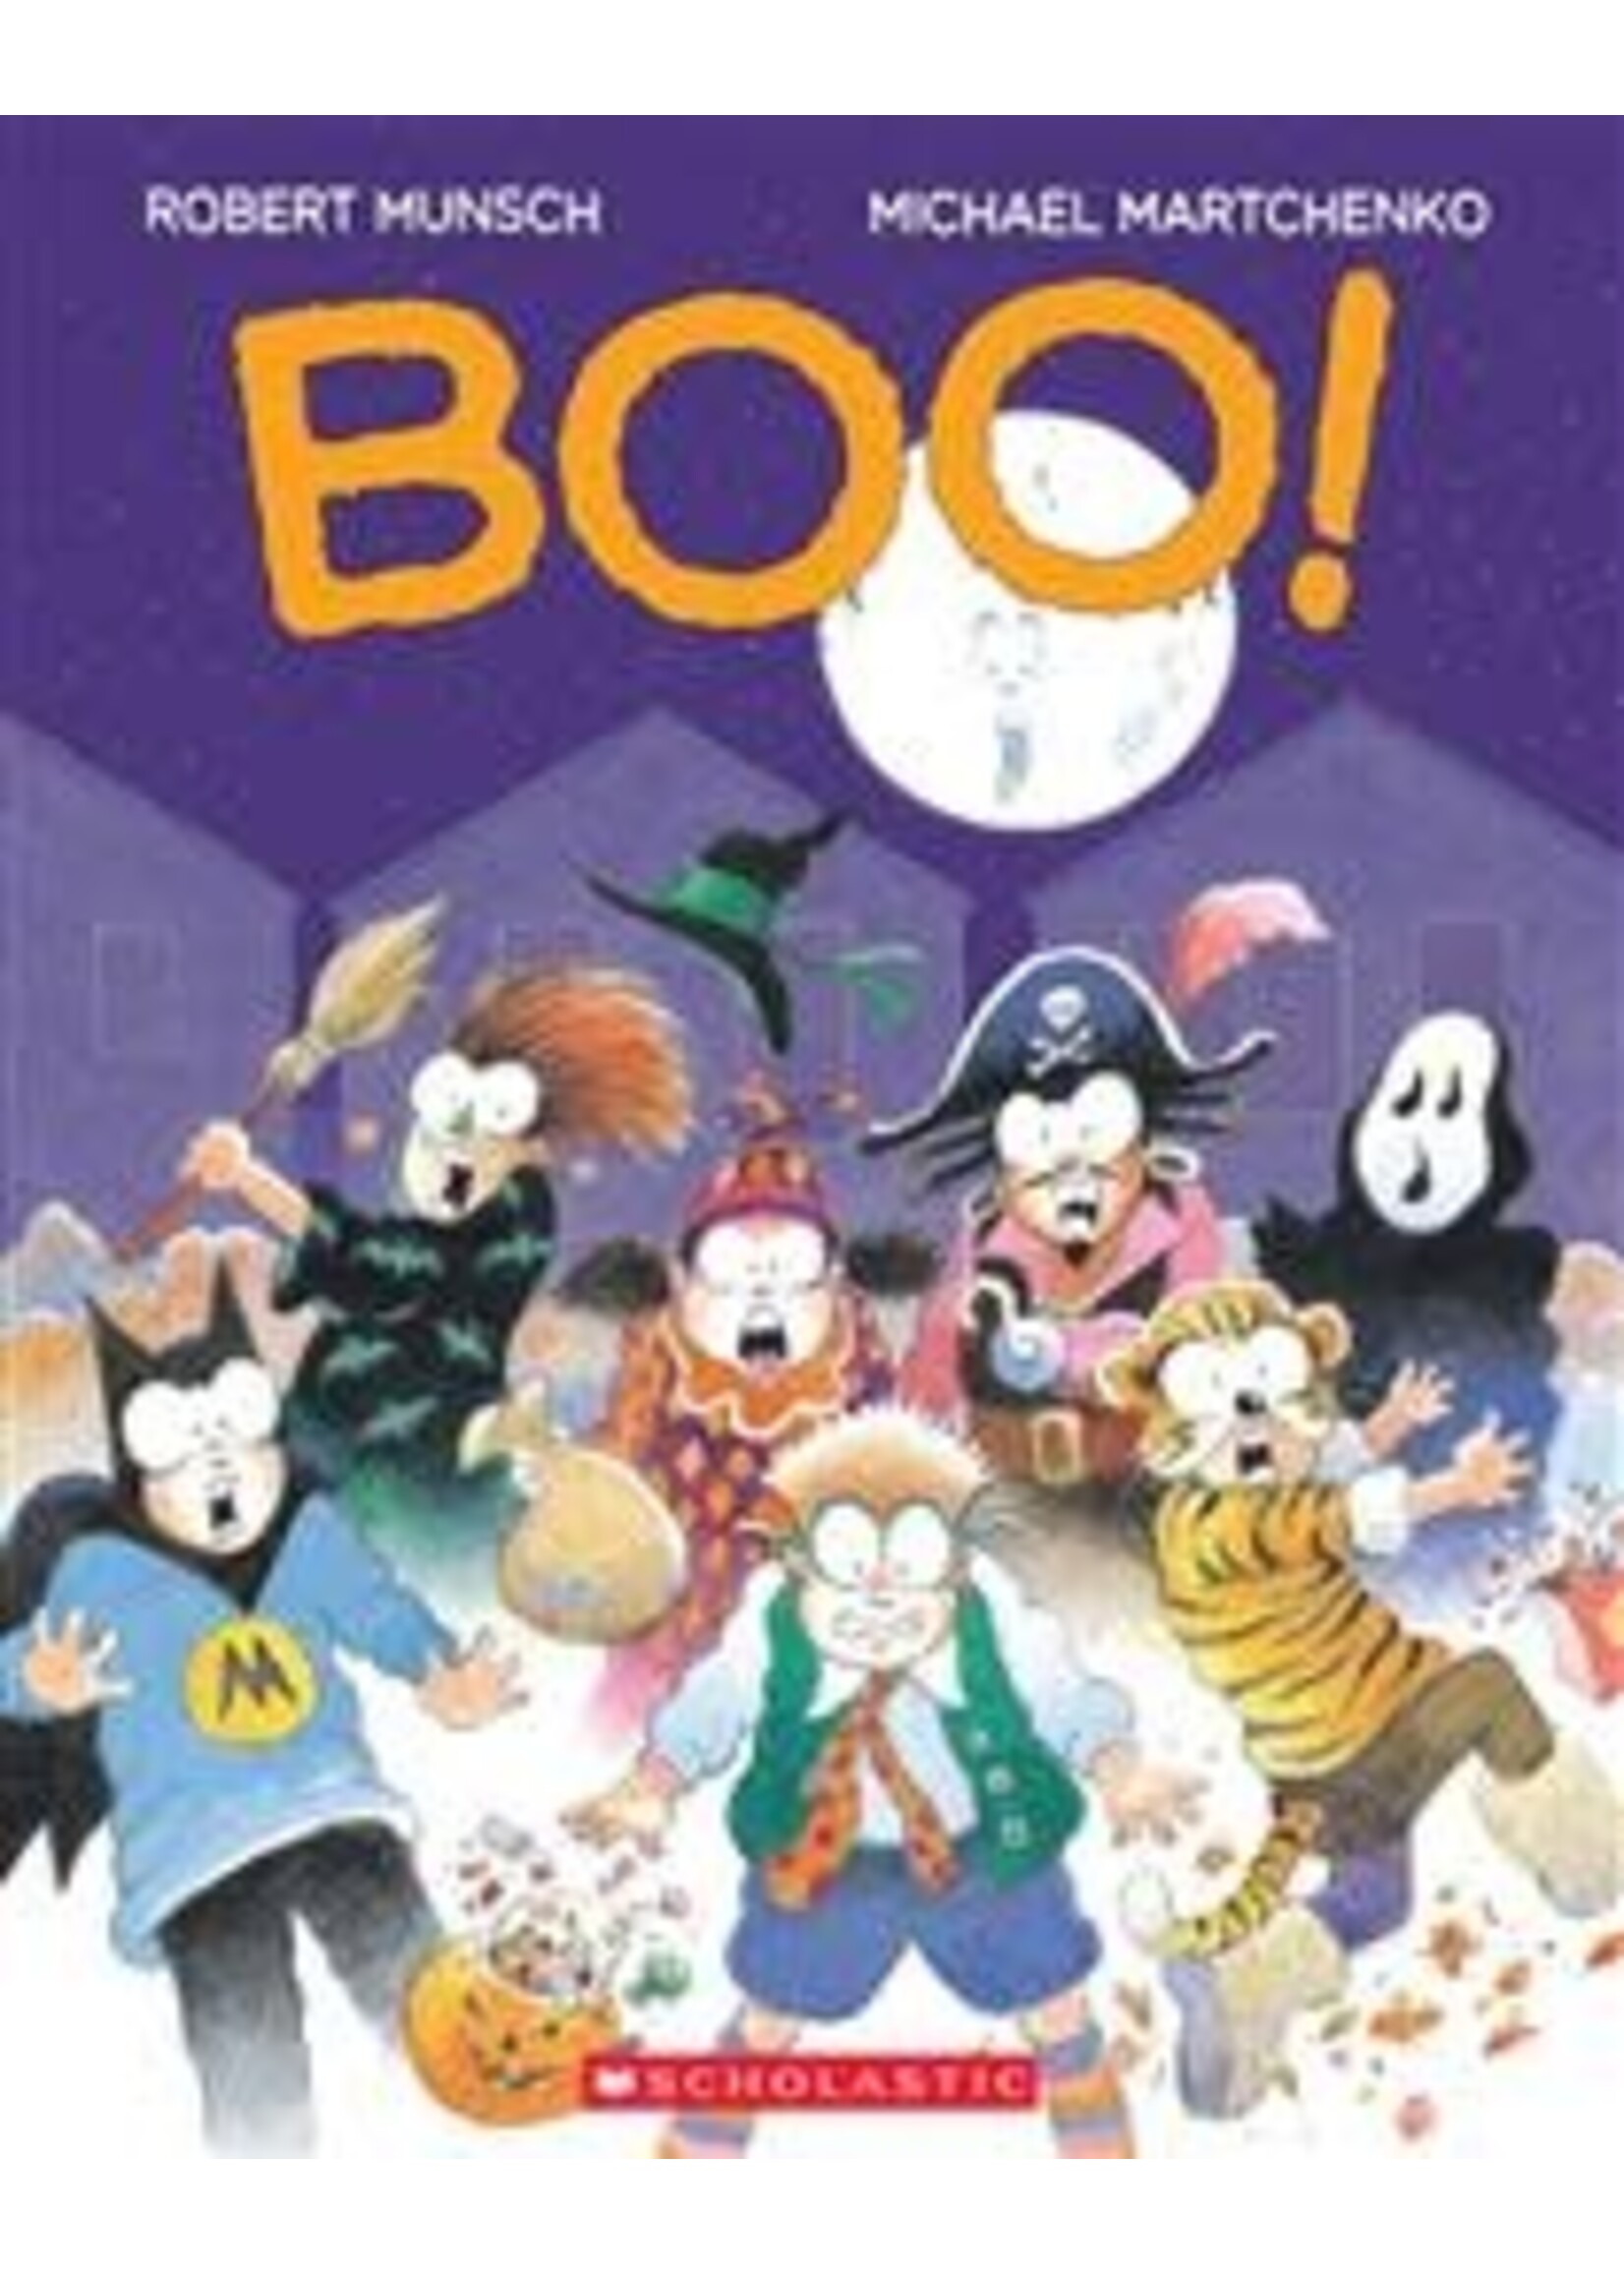 Boo! by Robert Munsch, Michael Martchenko